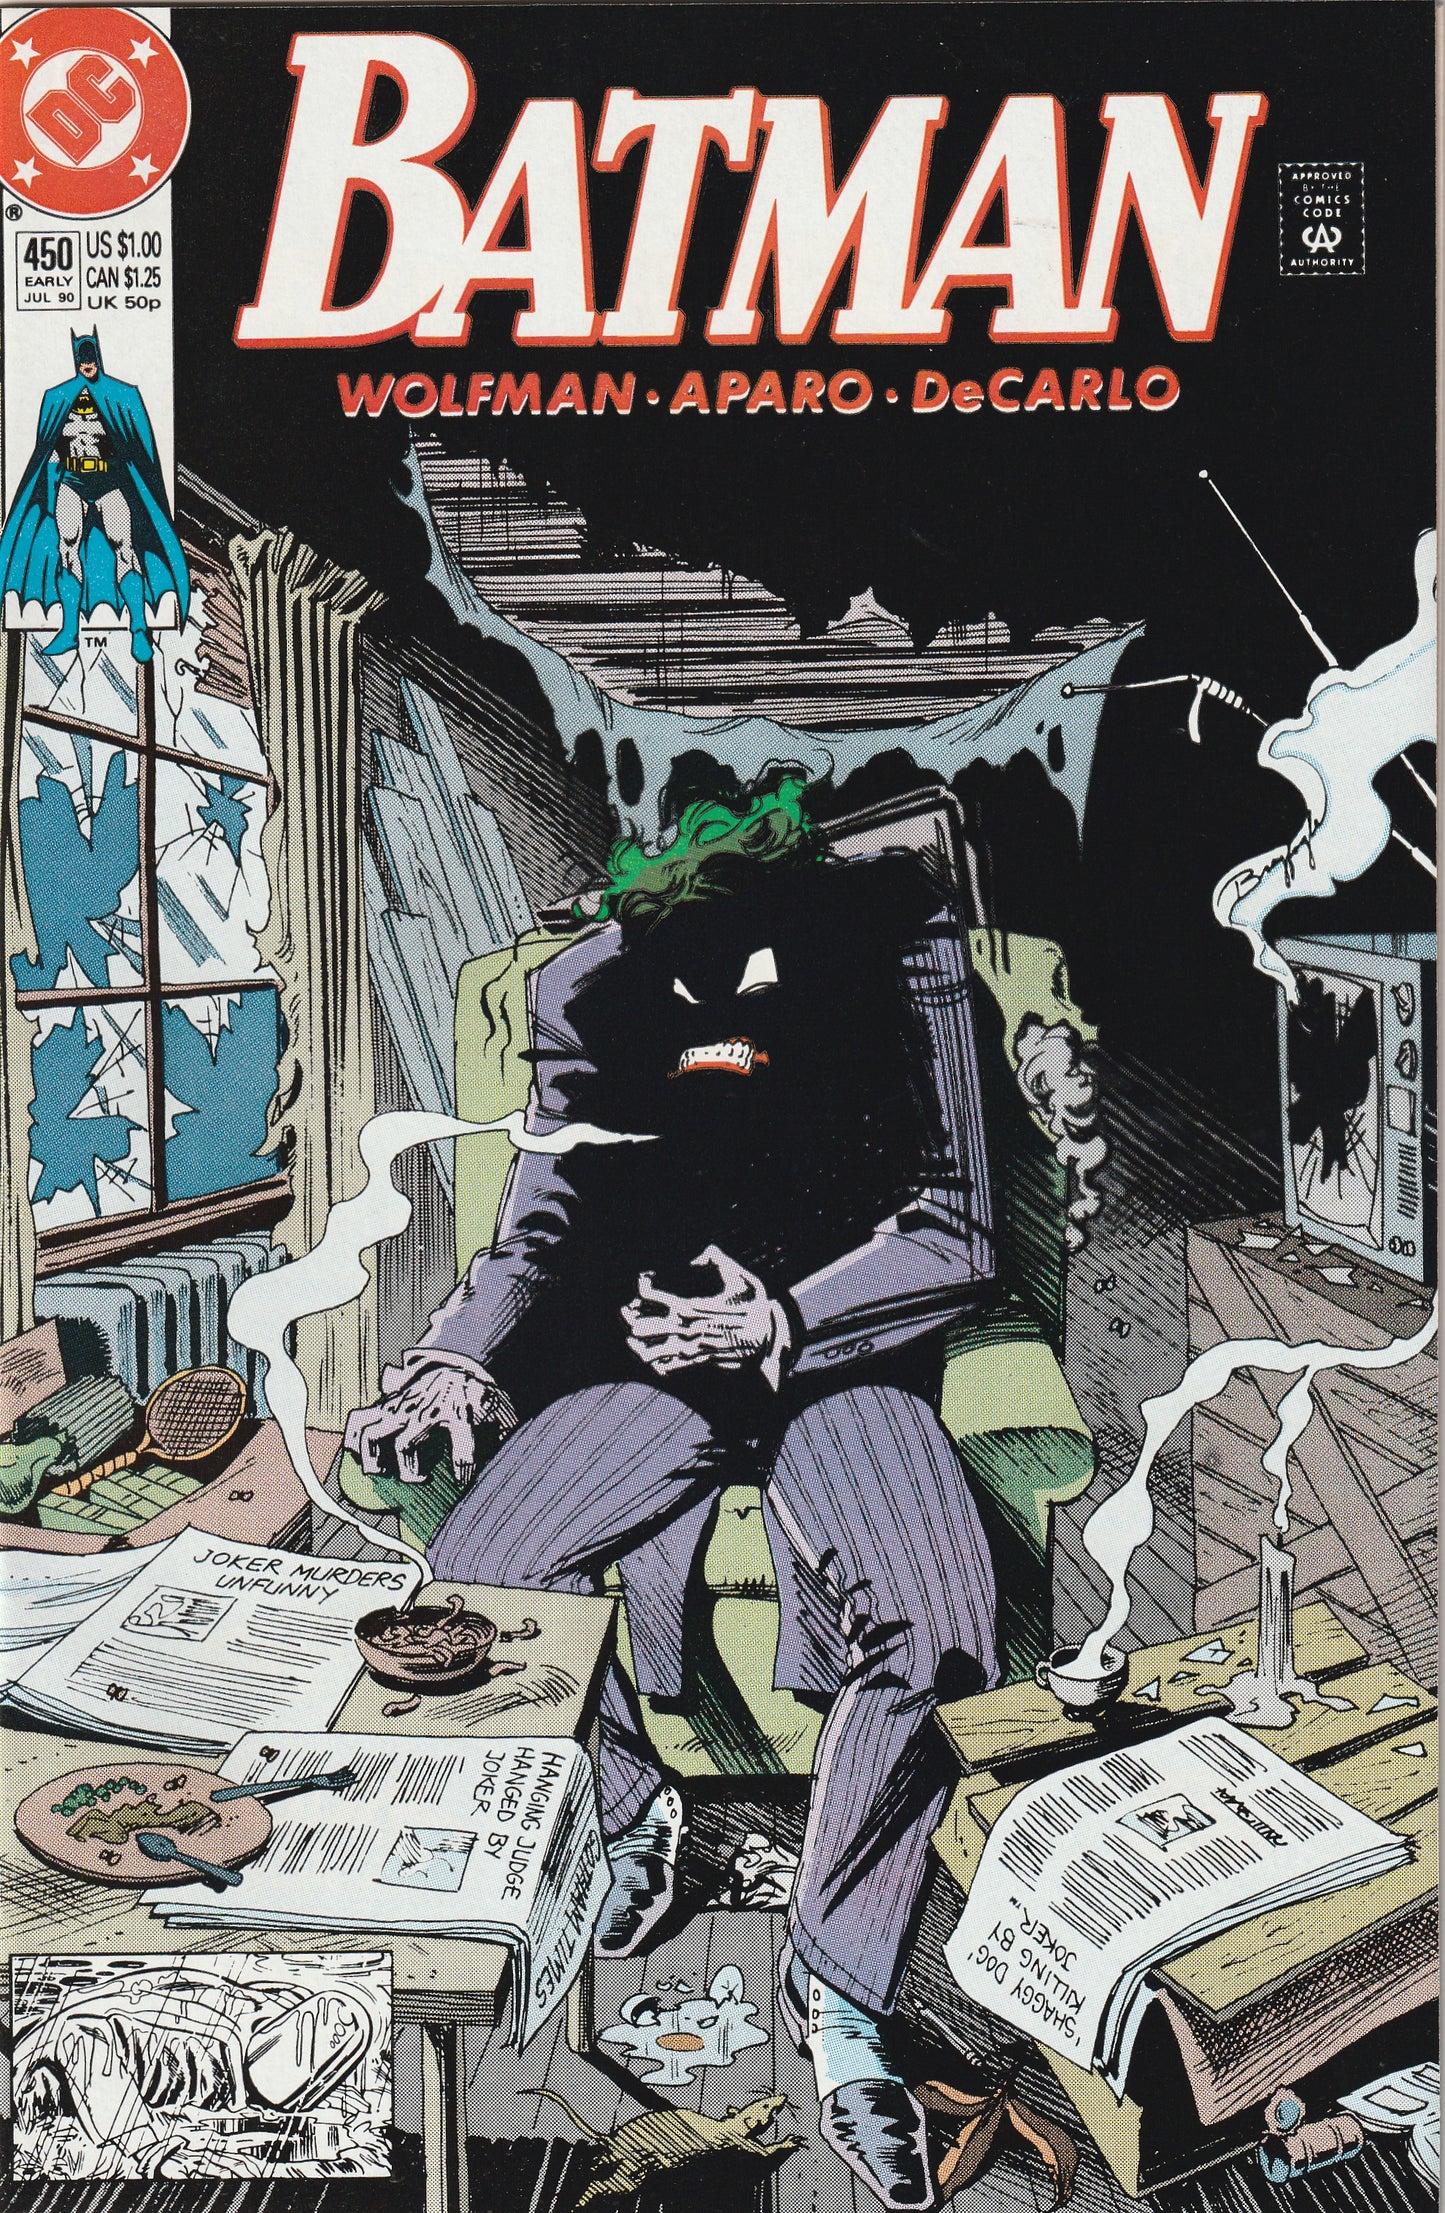 Batman #450 (1990) - Joker cover/story